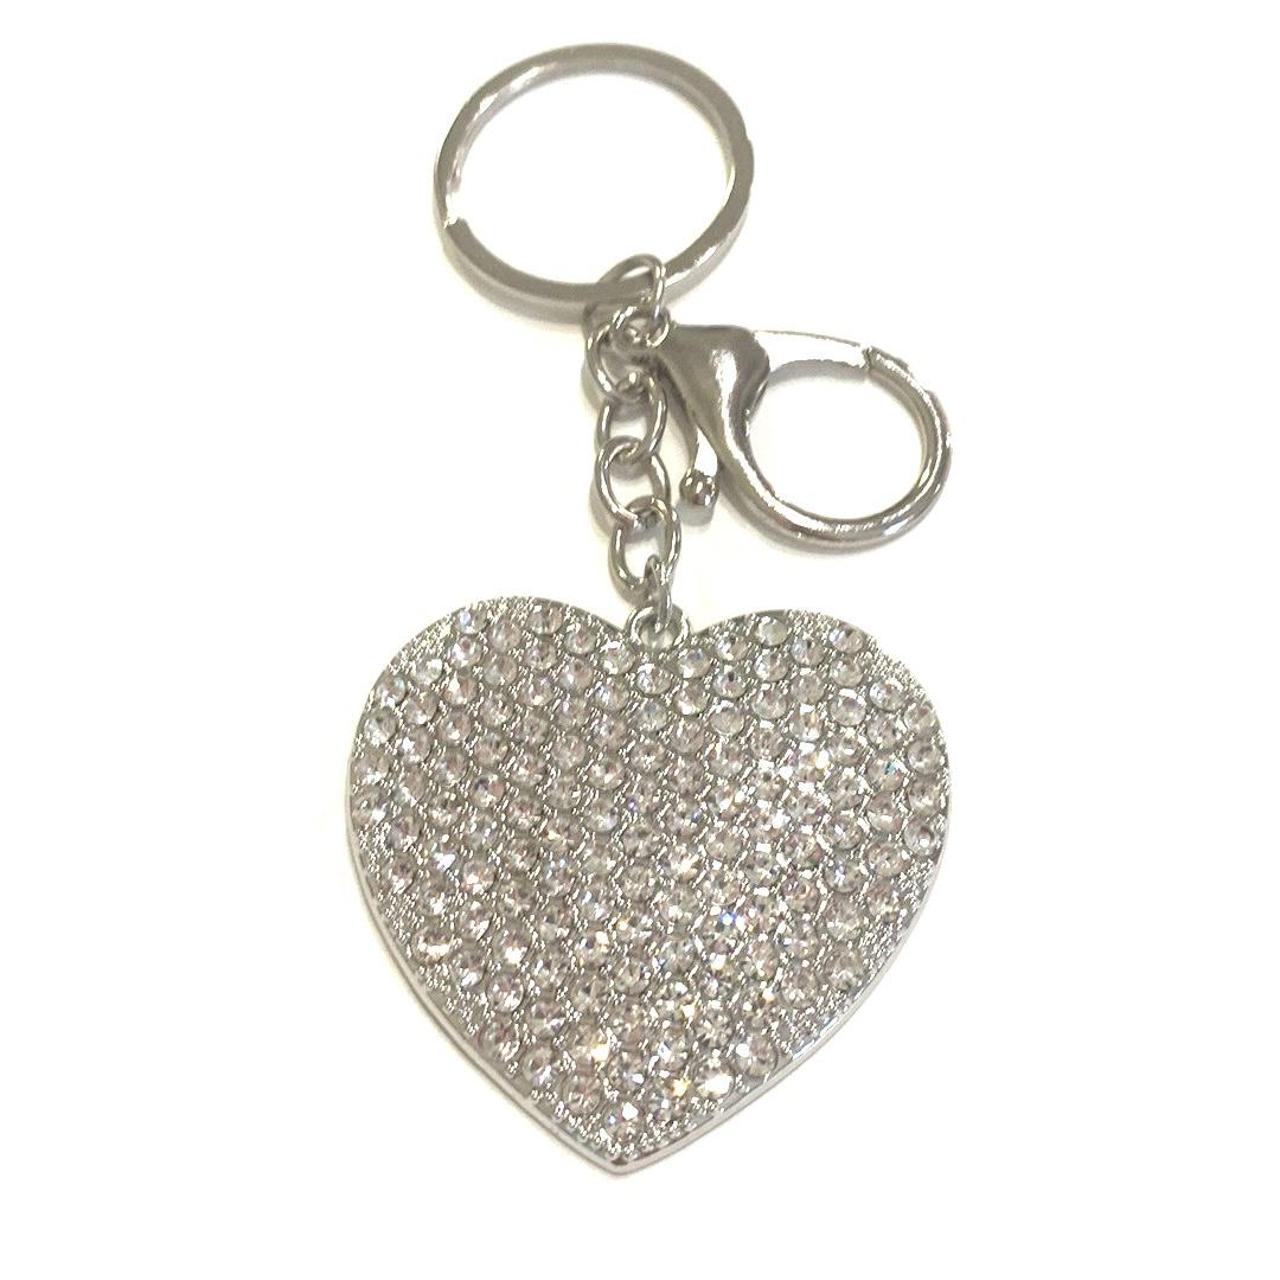 Bling Bling Heart Bag Charm Keychain Sparkling Heart Charm 